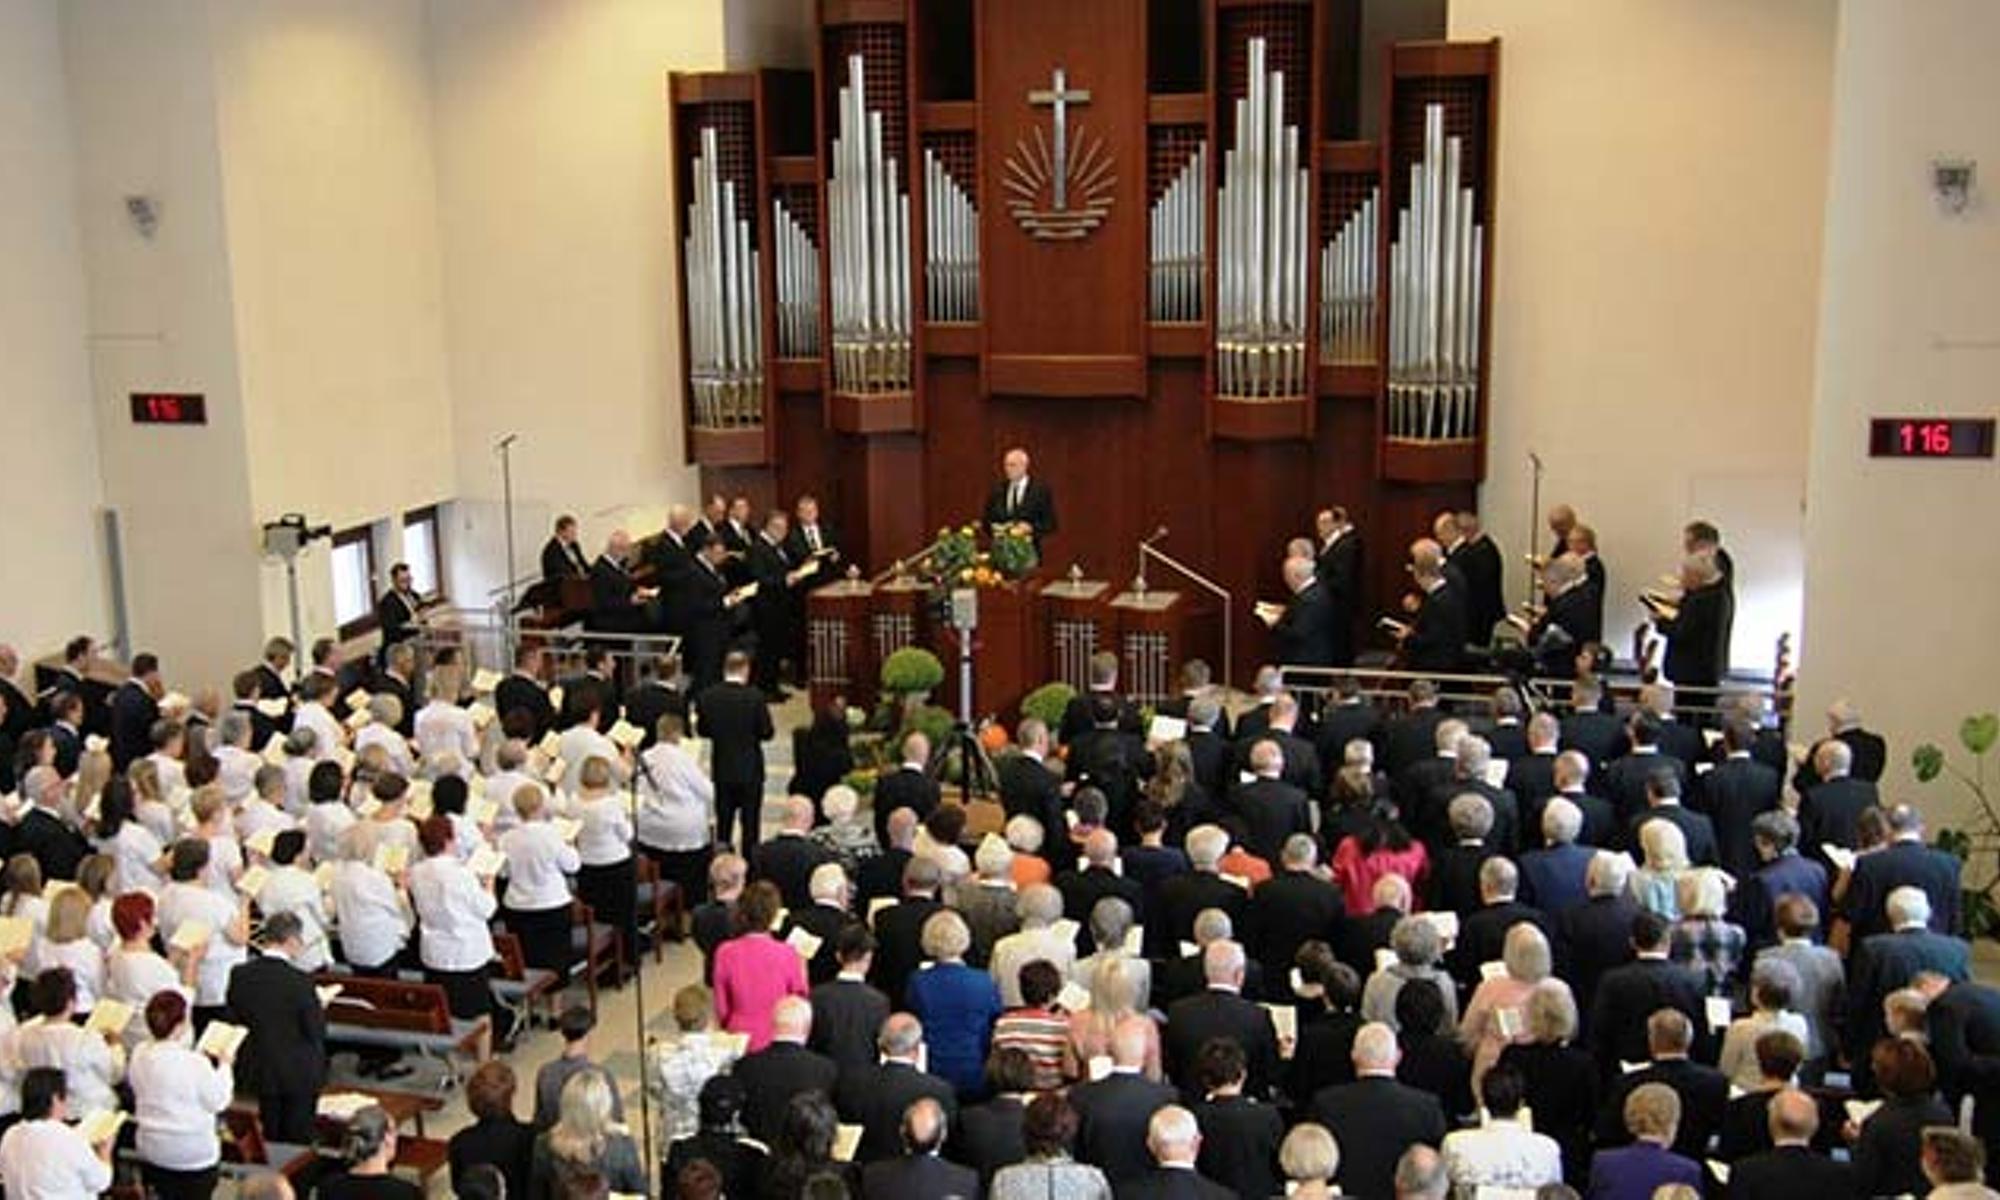 Der Gottesdienst fand in der Kirche in Mannheim statt